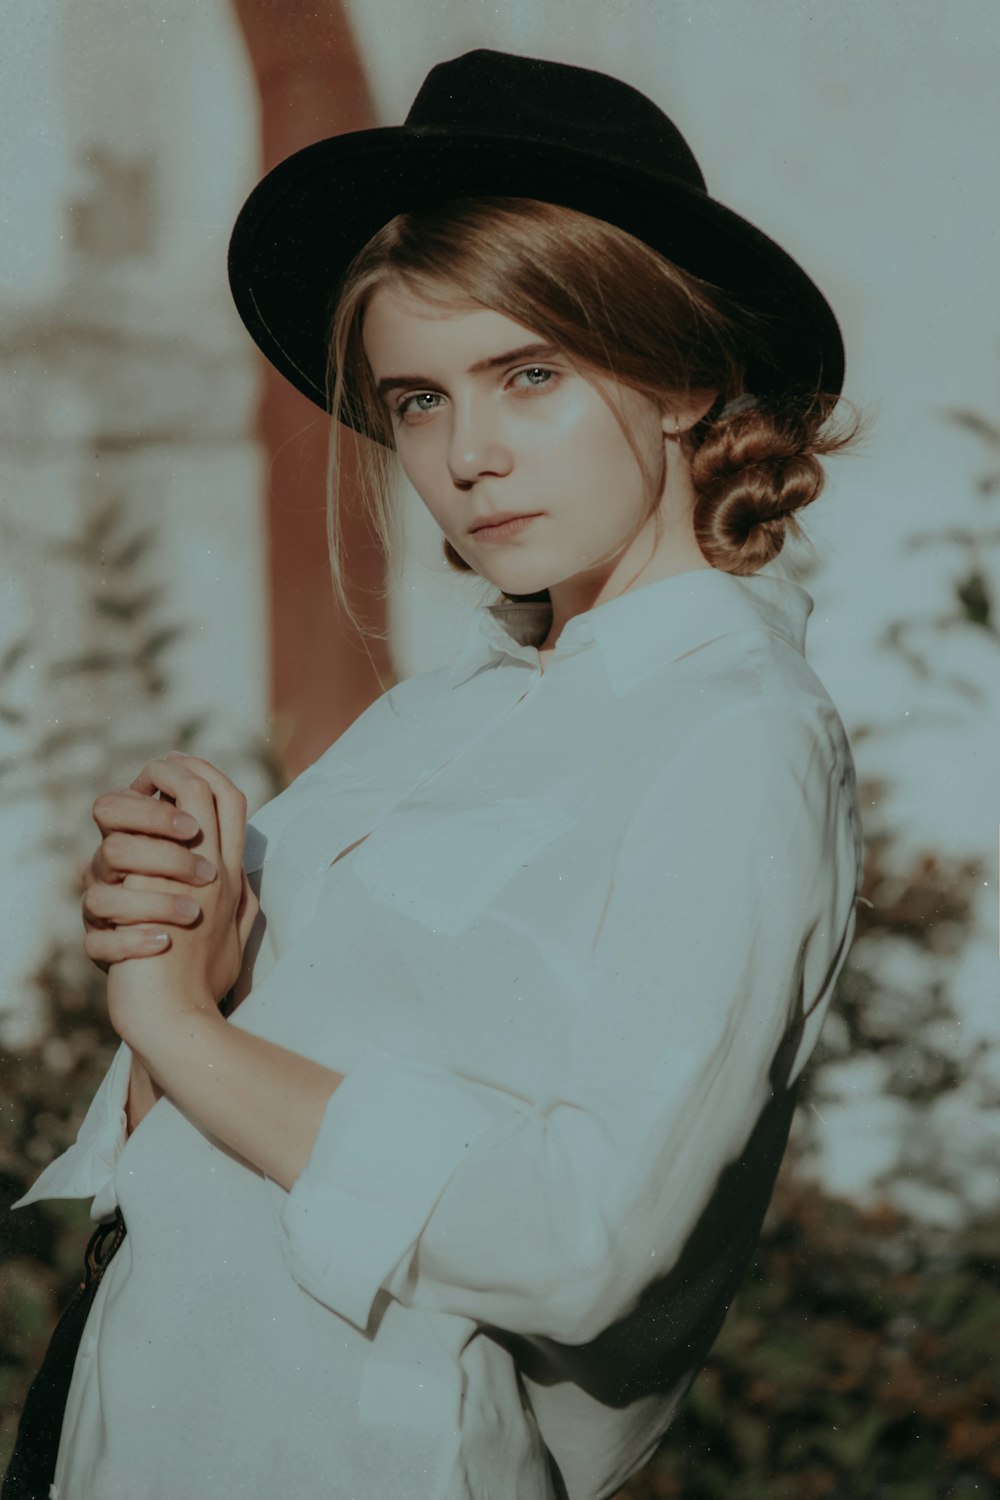 흰 칼라 버튼 업 긴팔 셔츠와 검은 모자를 쓰고 서 있는 여자